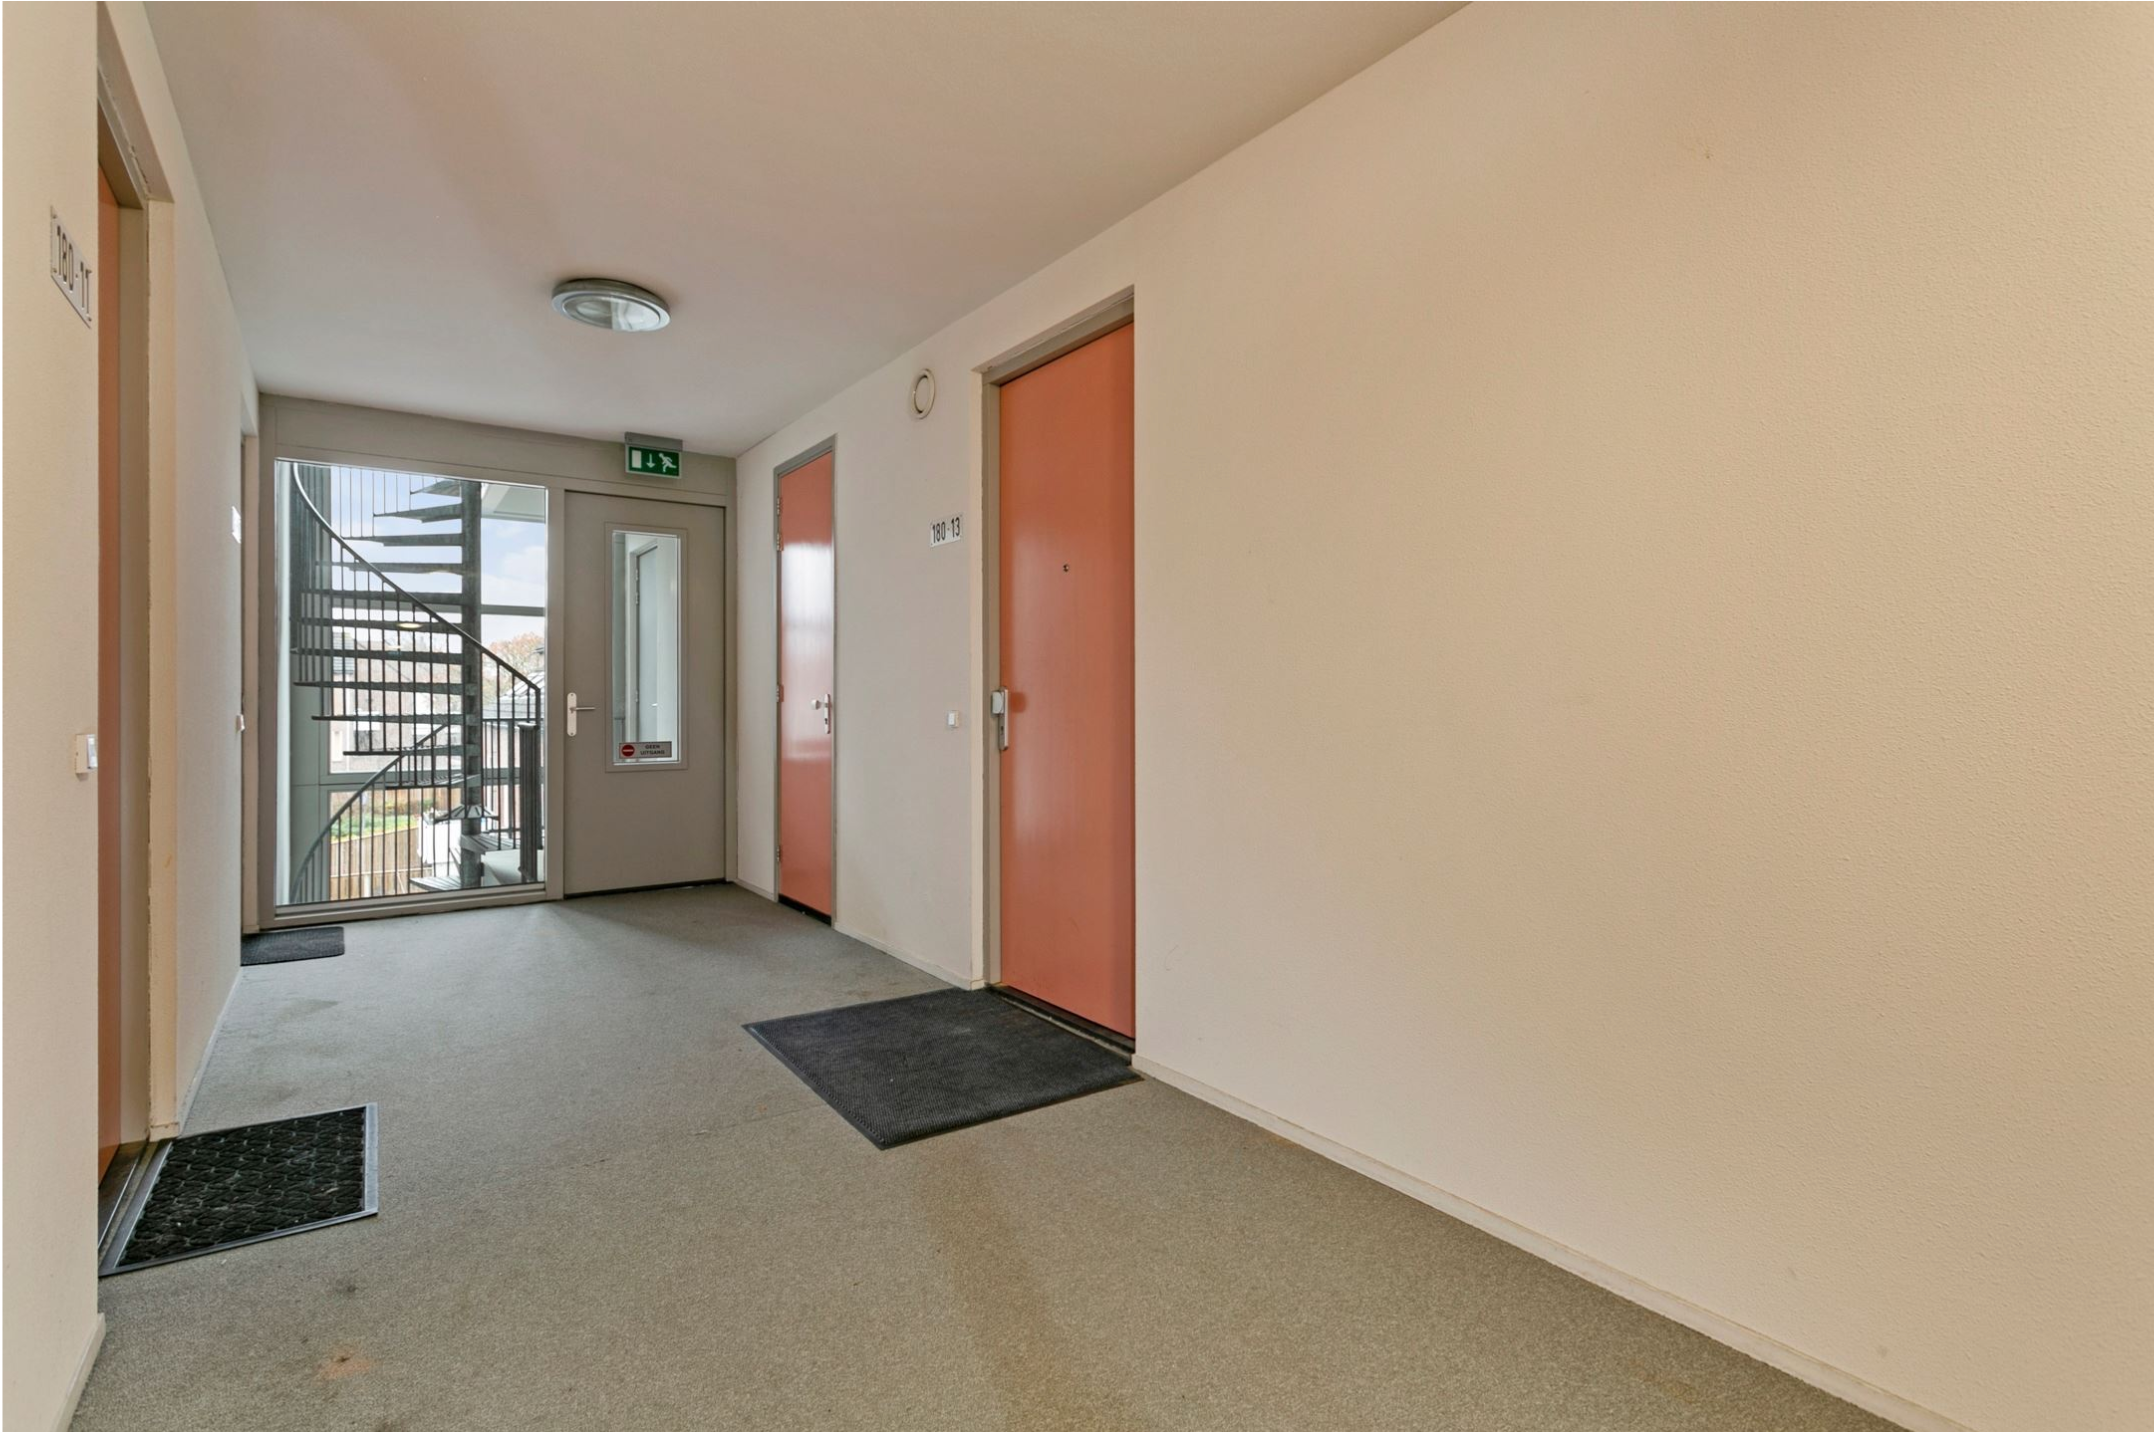 Woning / appartement - Tilburg - Korvelseweg 180 13